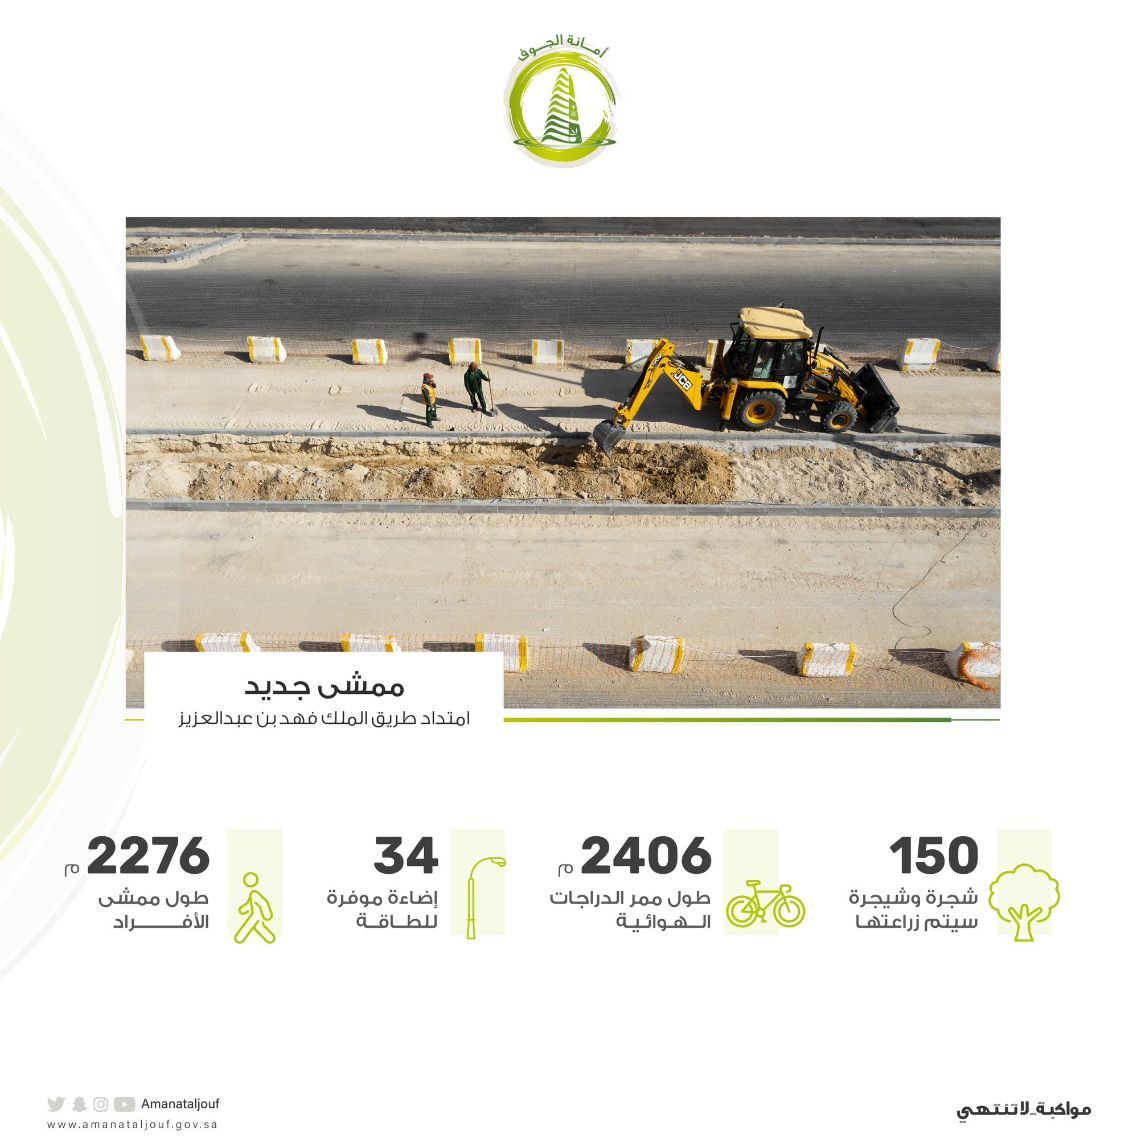 بدء تنفيذ مشروع تطوير امتداد طريق الملك عبدالعزيز بمدينة سكاكا